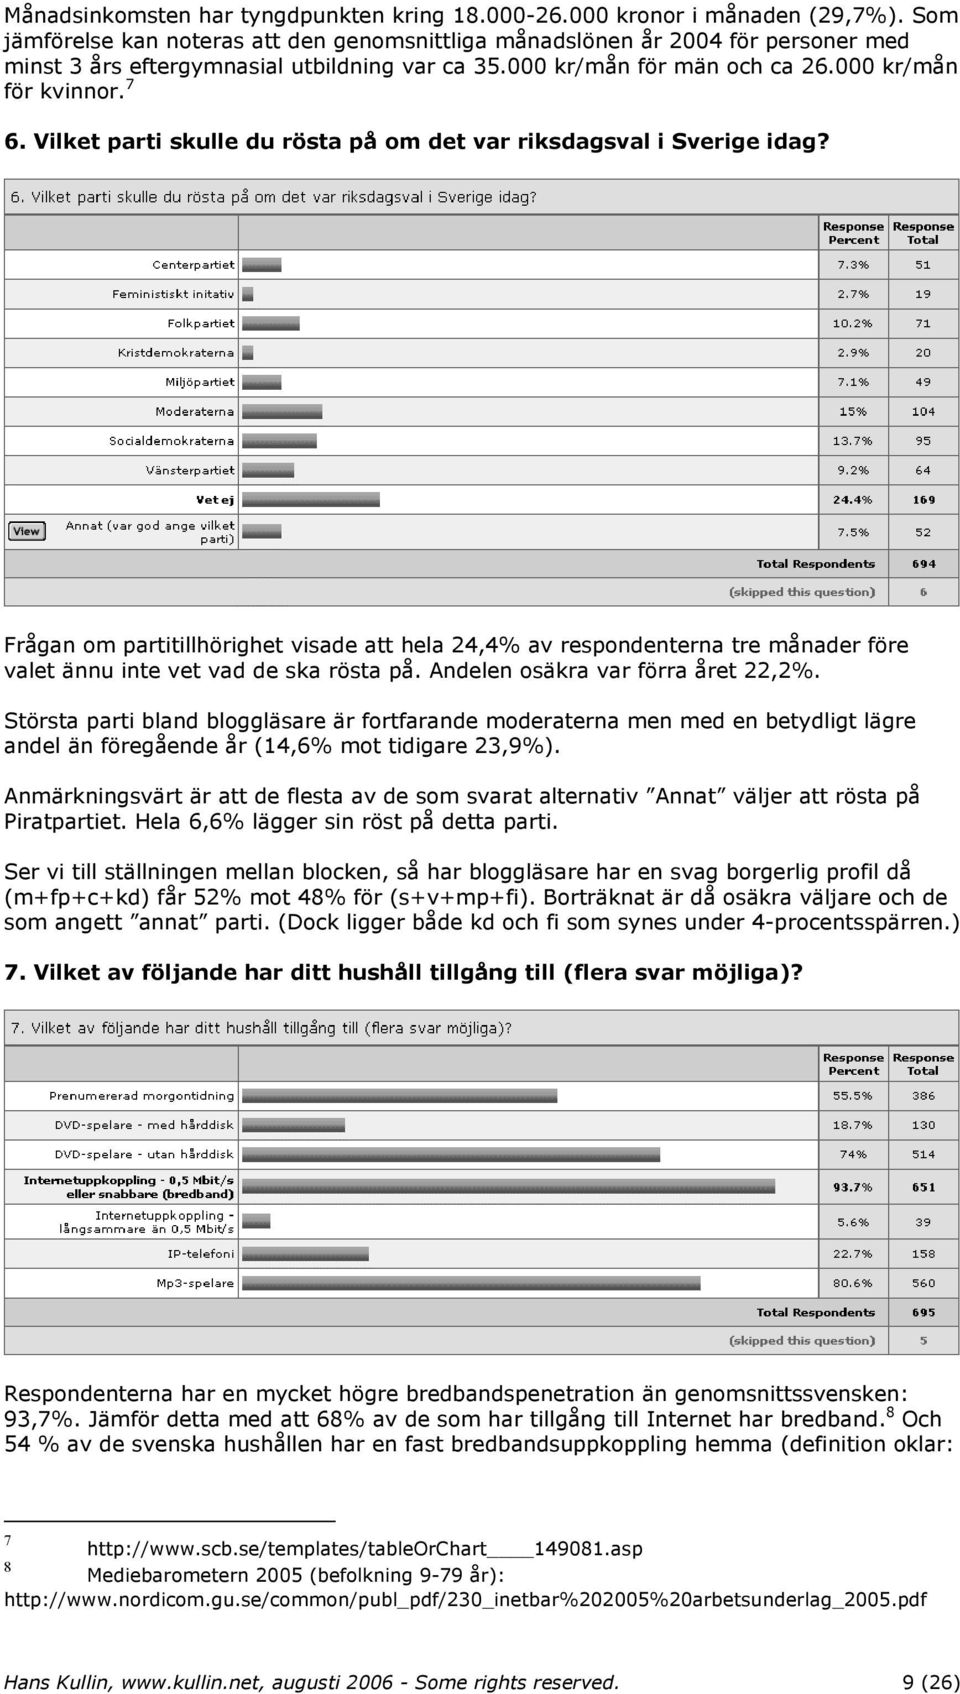 Vilket parti skulle du rösta på om det var riksdagsval i Sverige idag? Frågan om partitillhörighet visade att hela 24,4% av respondenterna tre månader före valet ännu inte vet vad de ska rösta på.